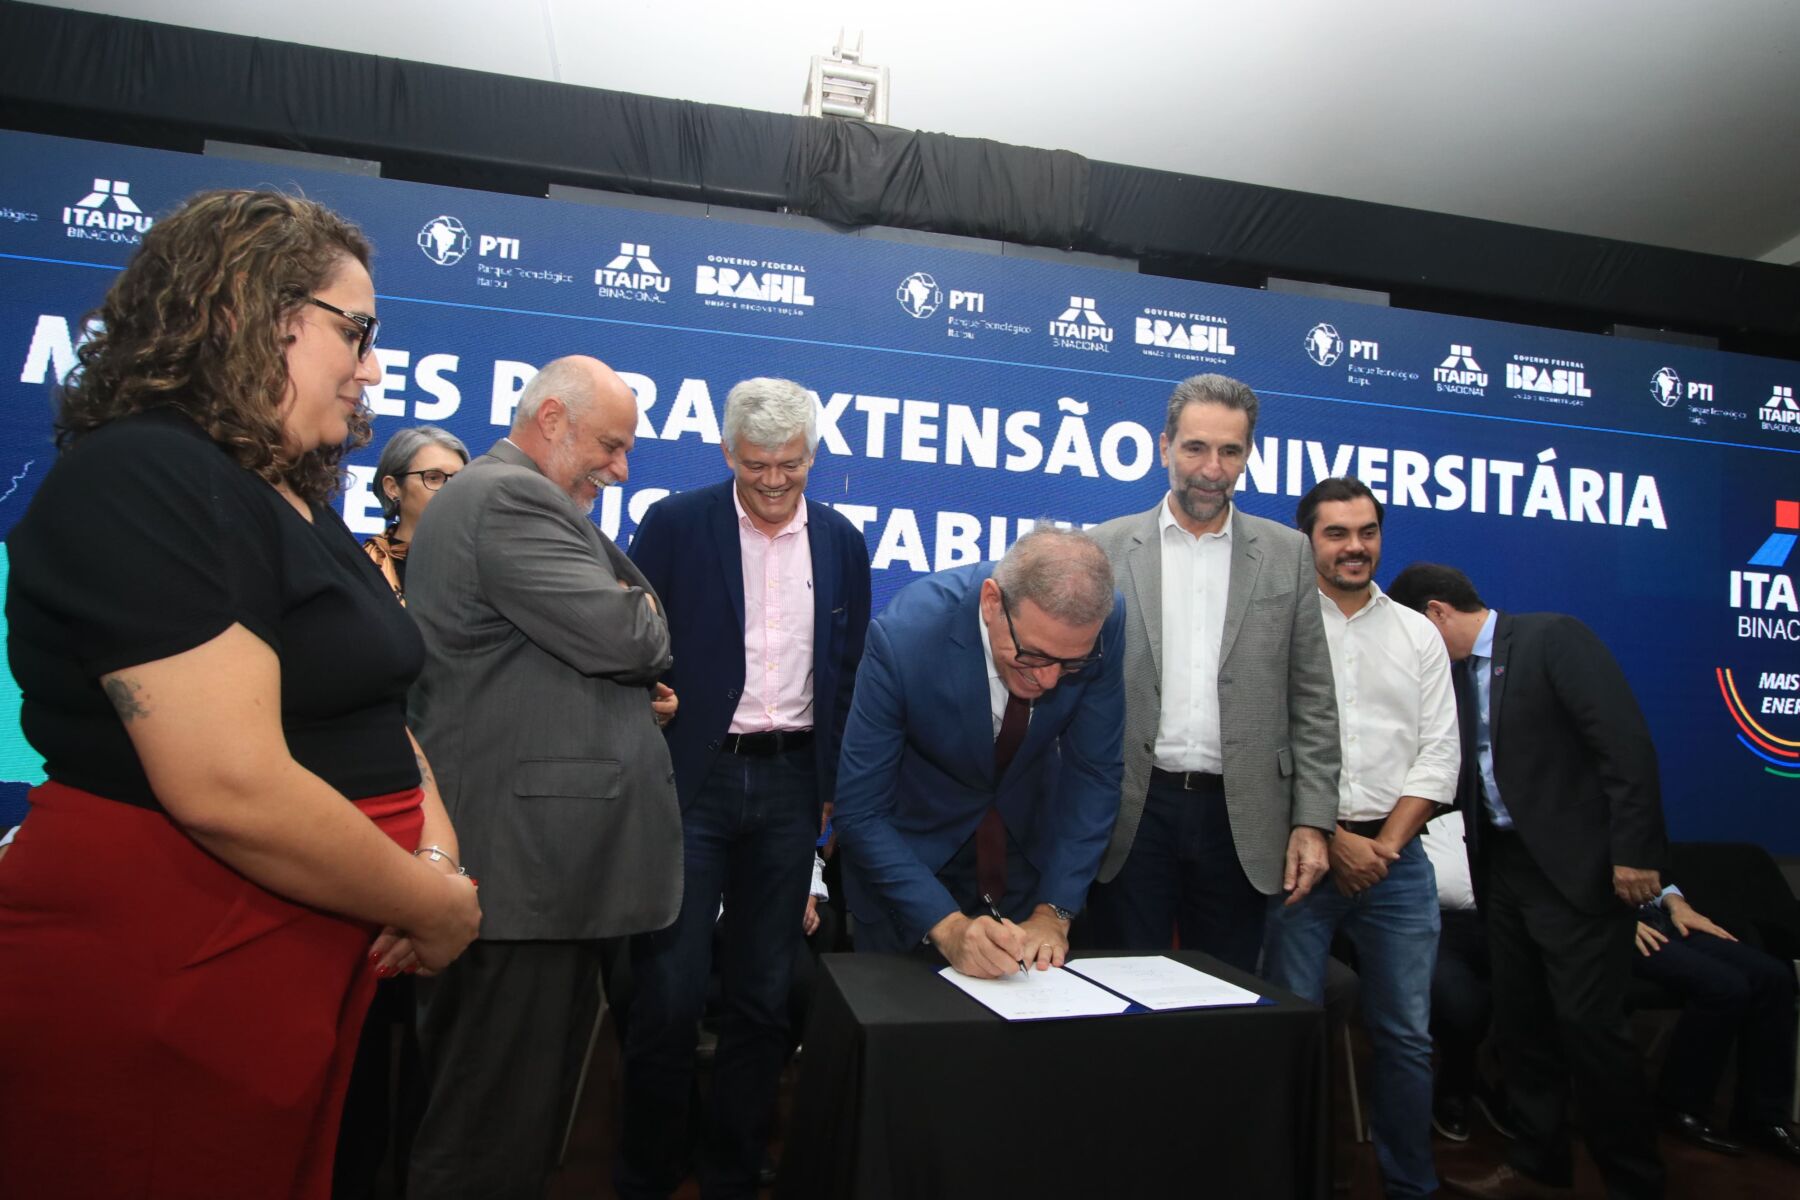 Unicentro assina parceria com Itaipu Binacional e Parque Tecnológico Itaipu